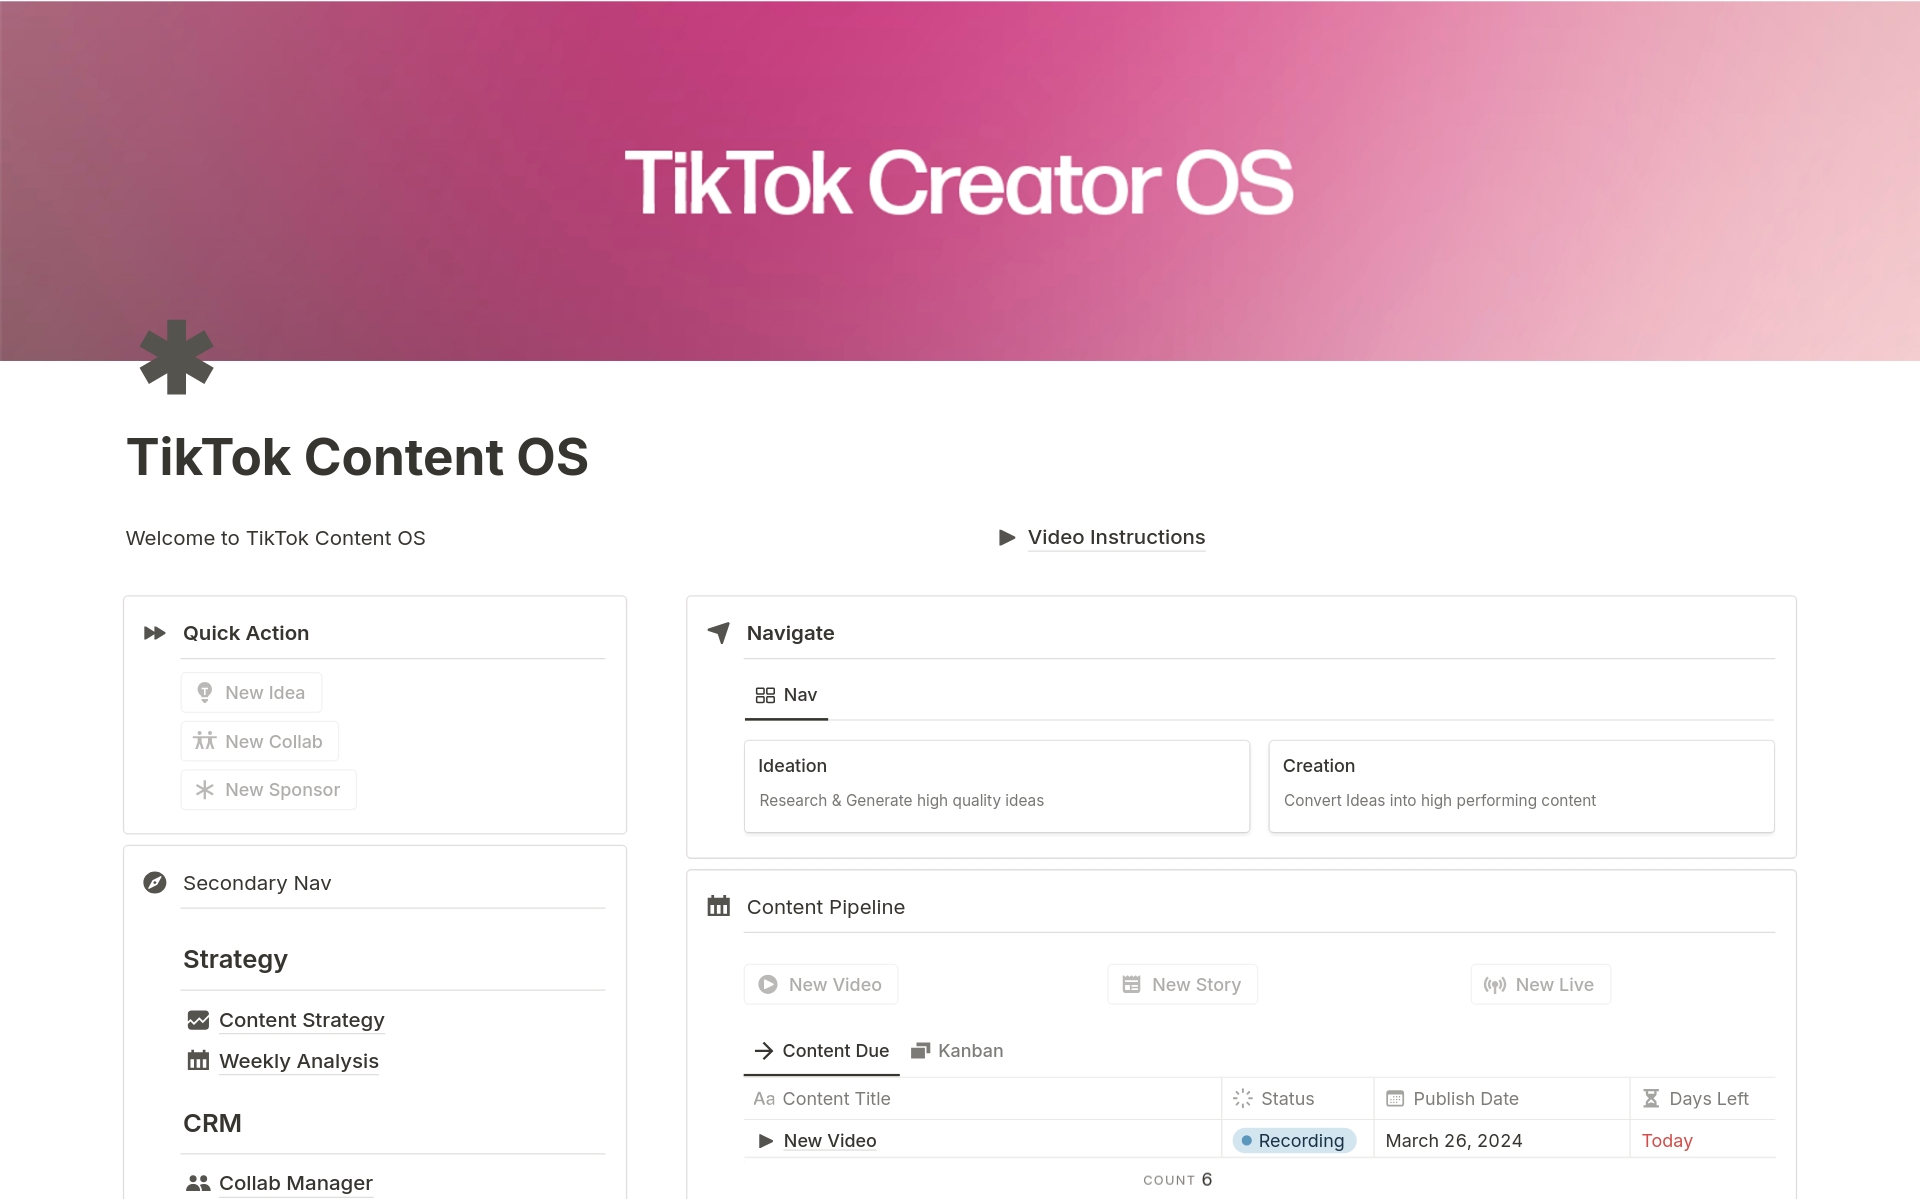 Vista previa de una plantilla para TikTok Creator OS